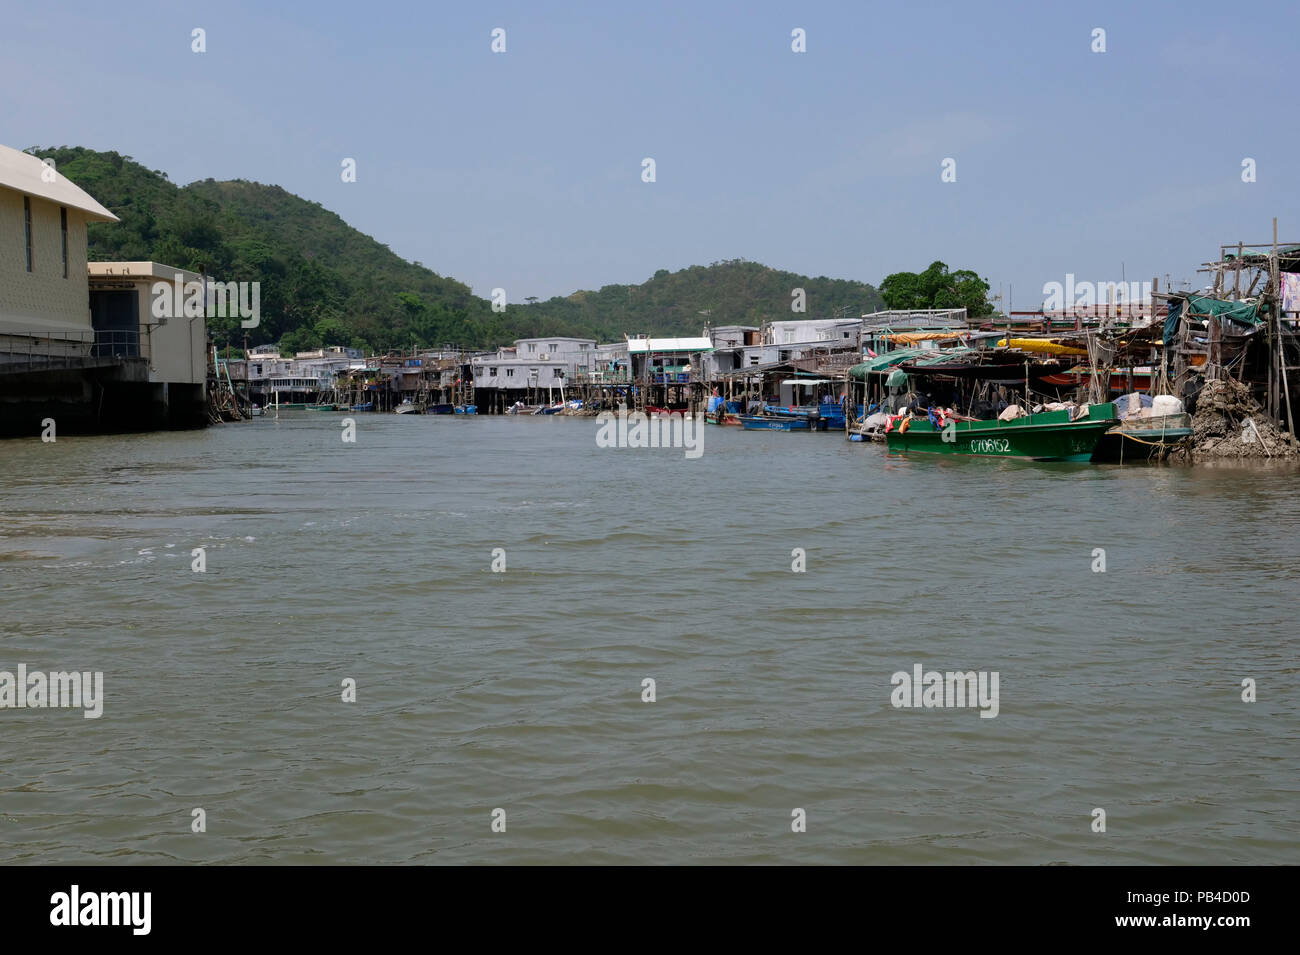 Il villaggio di pescatori e palafitte di Tai O dall'acqua, western Lantau Island, Hong Kong Foto Stock